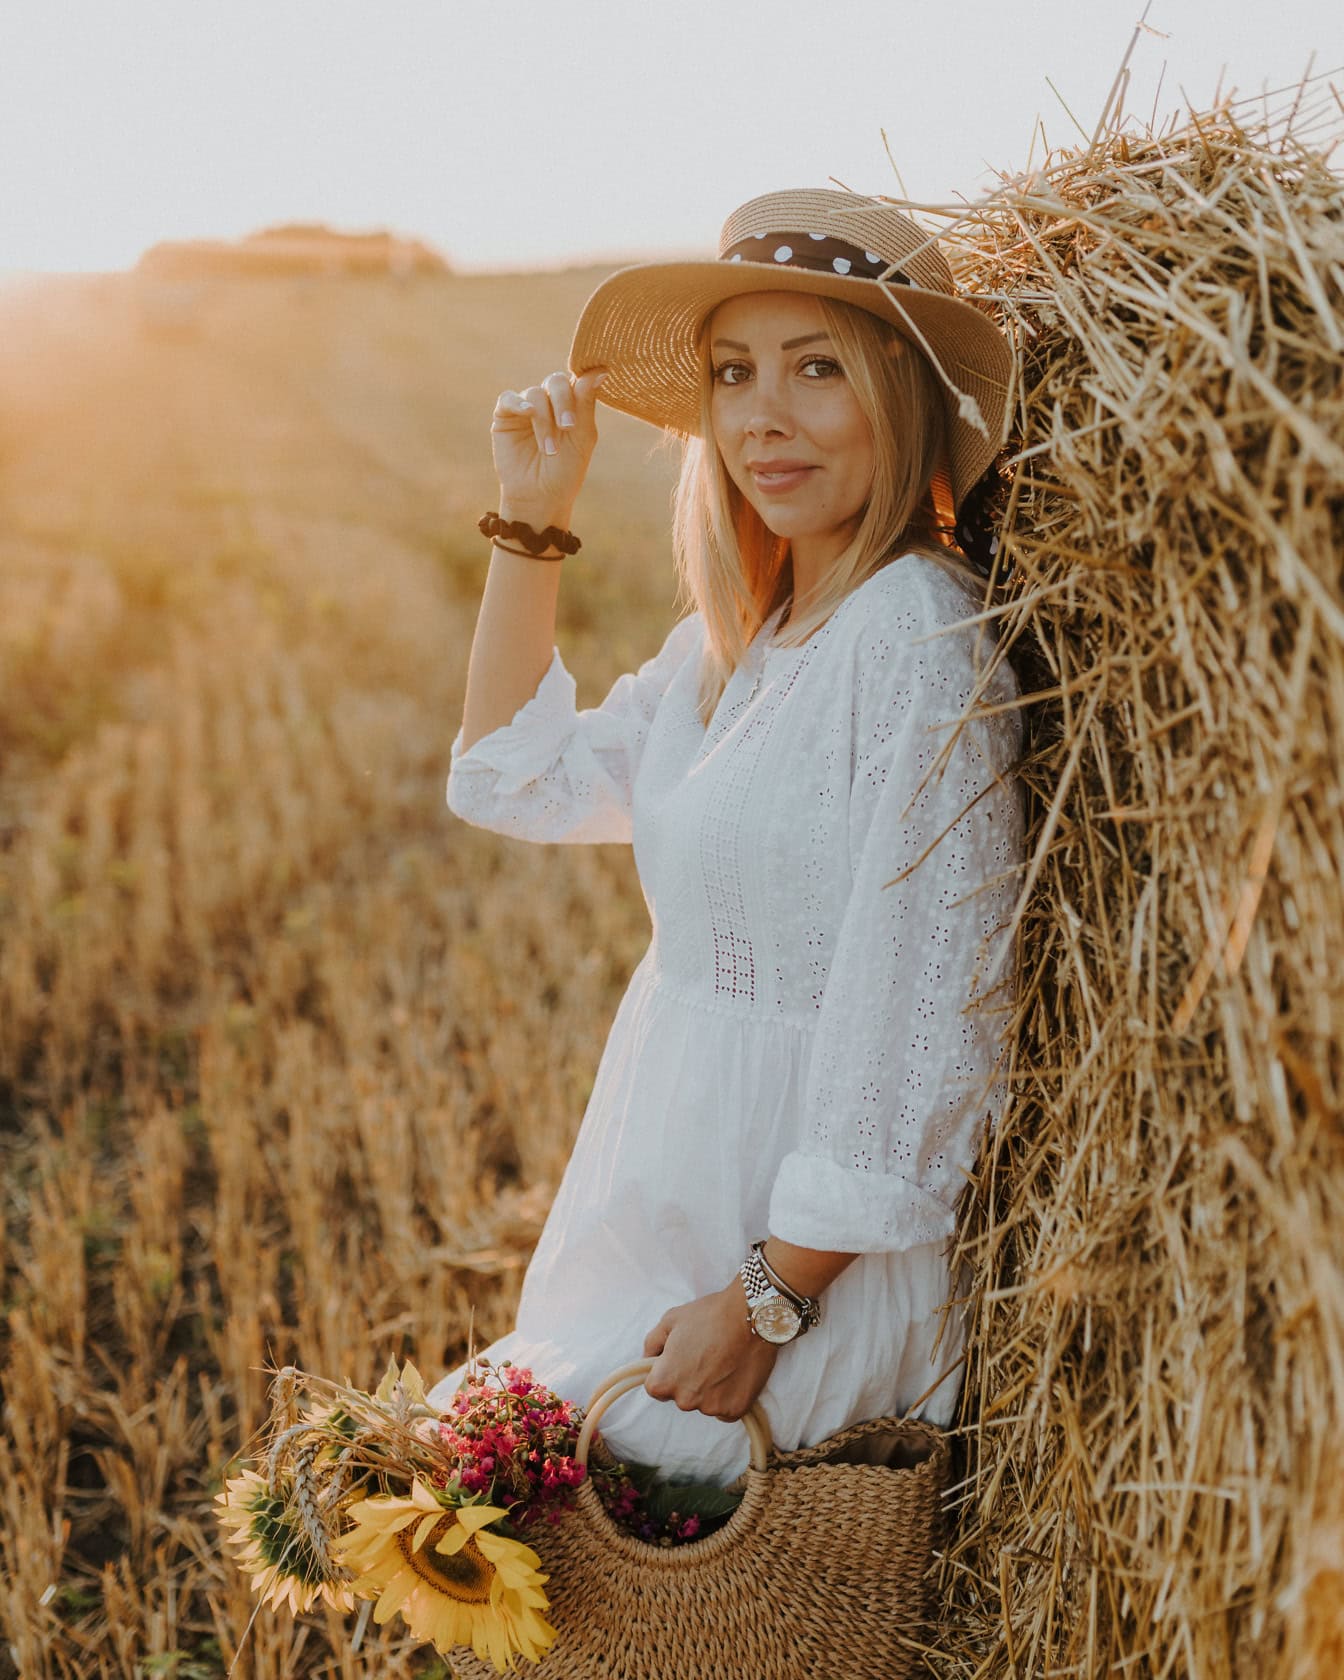 Retrato de uma cowgirl em um vestido branco estilo country e chapéu de palha enquanto ela se encosta a um palheiro em um campo ensolarado